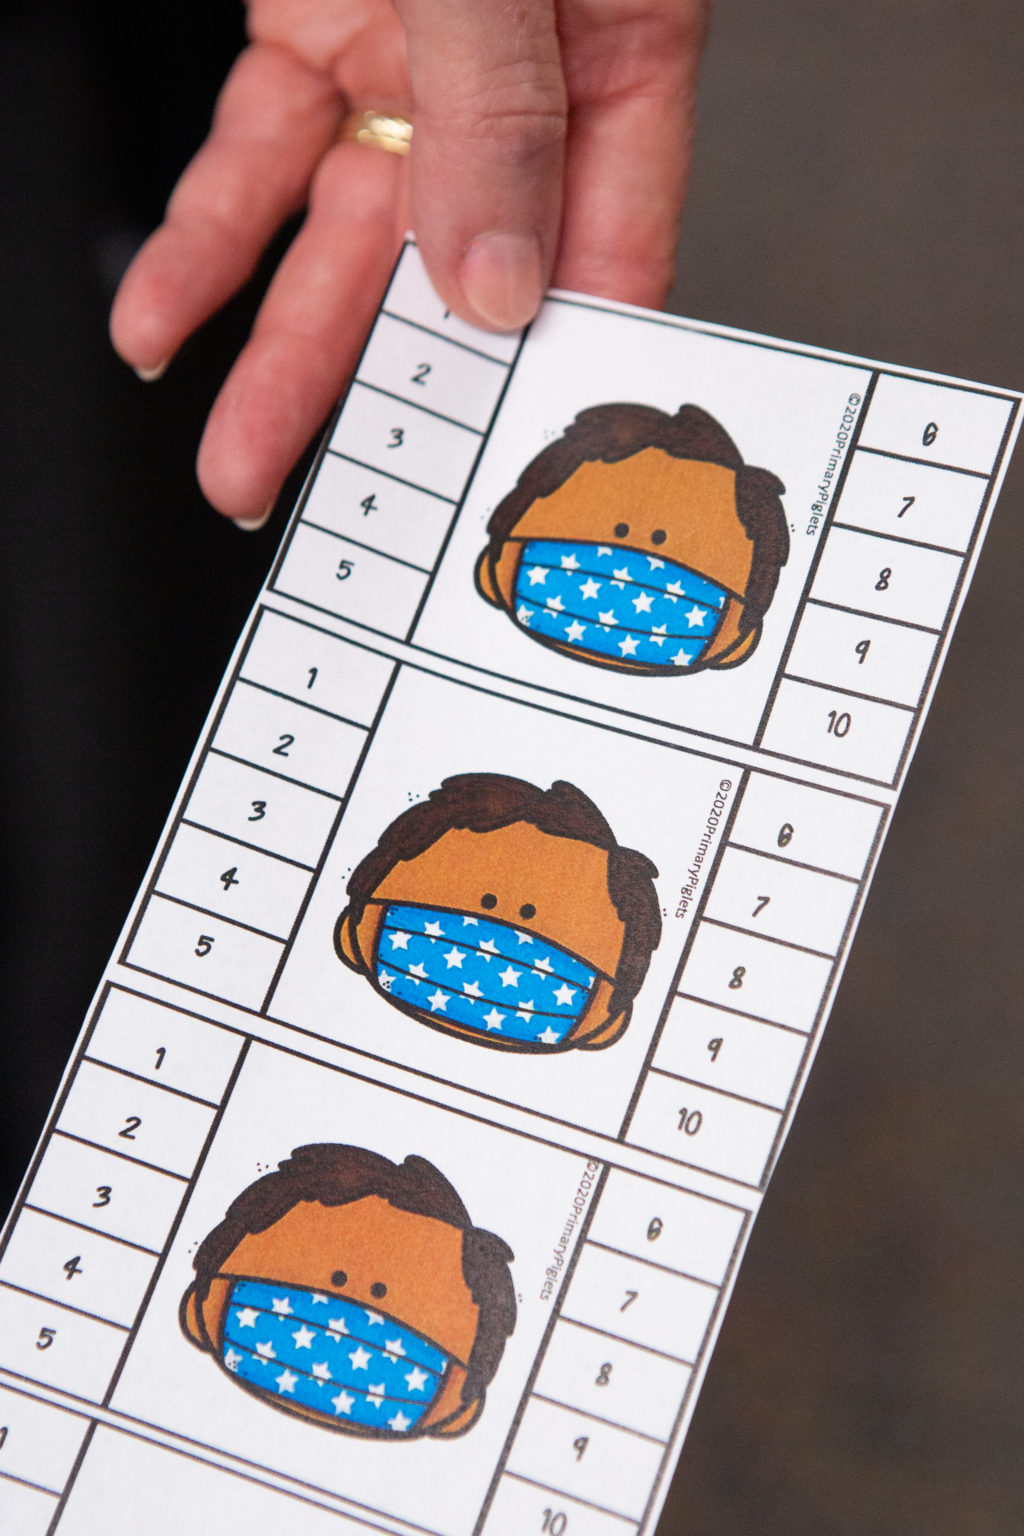 Una tarjeta con una imagen de caricatura de una persona que lleva una máscara facial con los números 1-10 alineando los lados de la tarjeta.